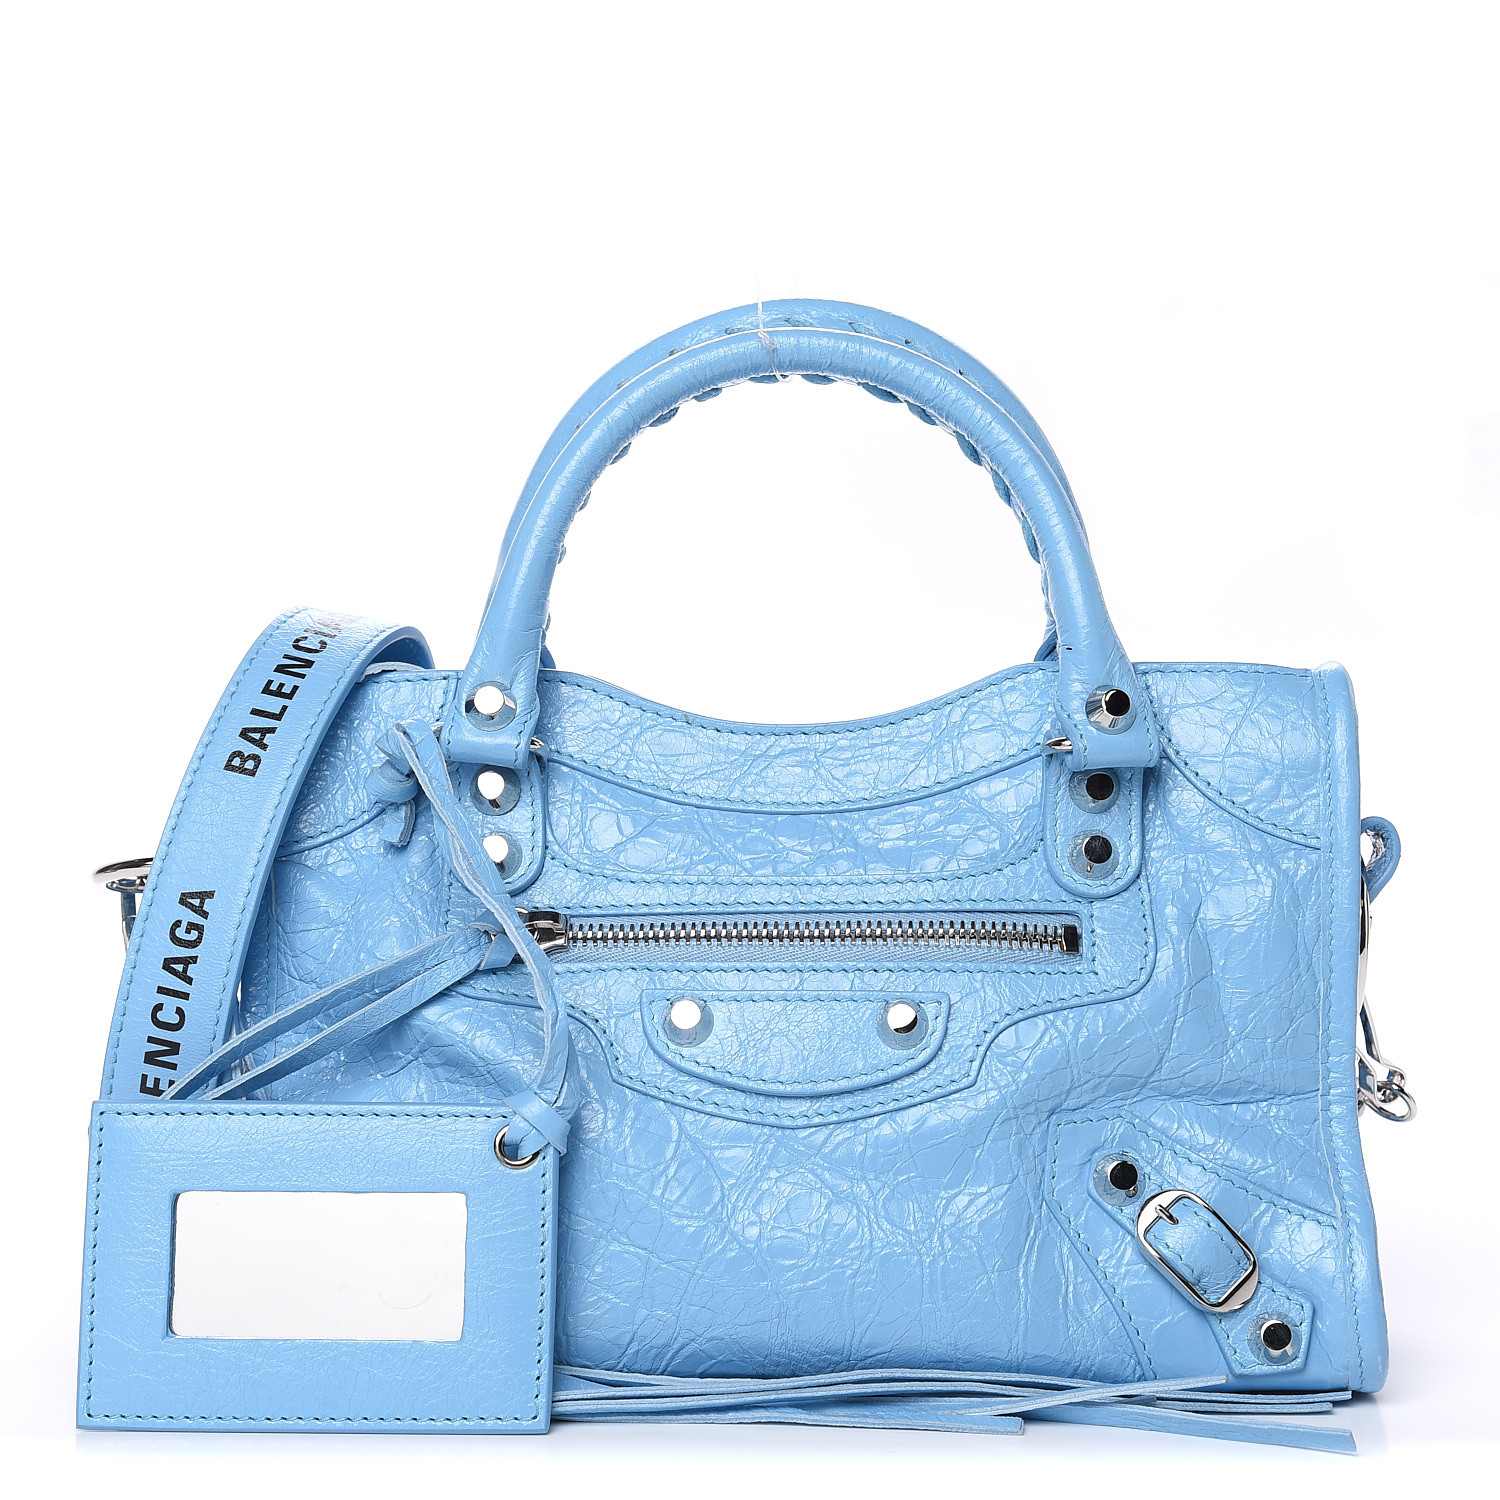 light blue balenciaga bag